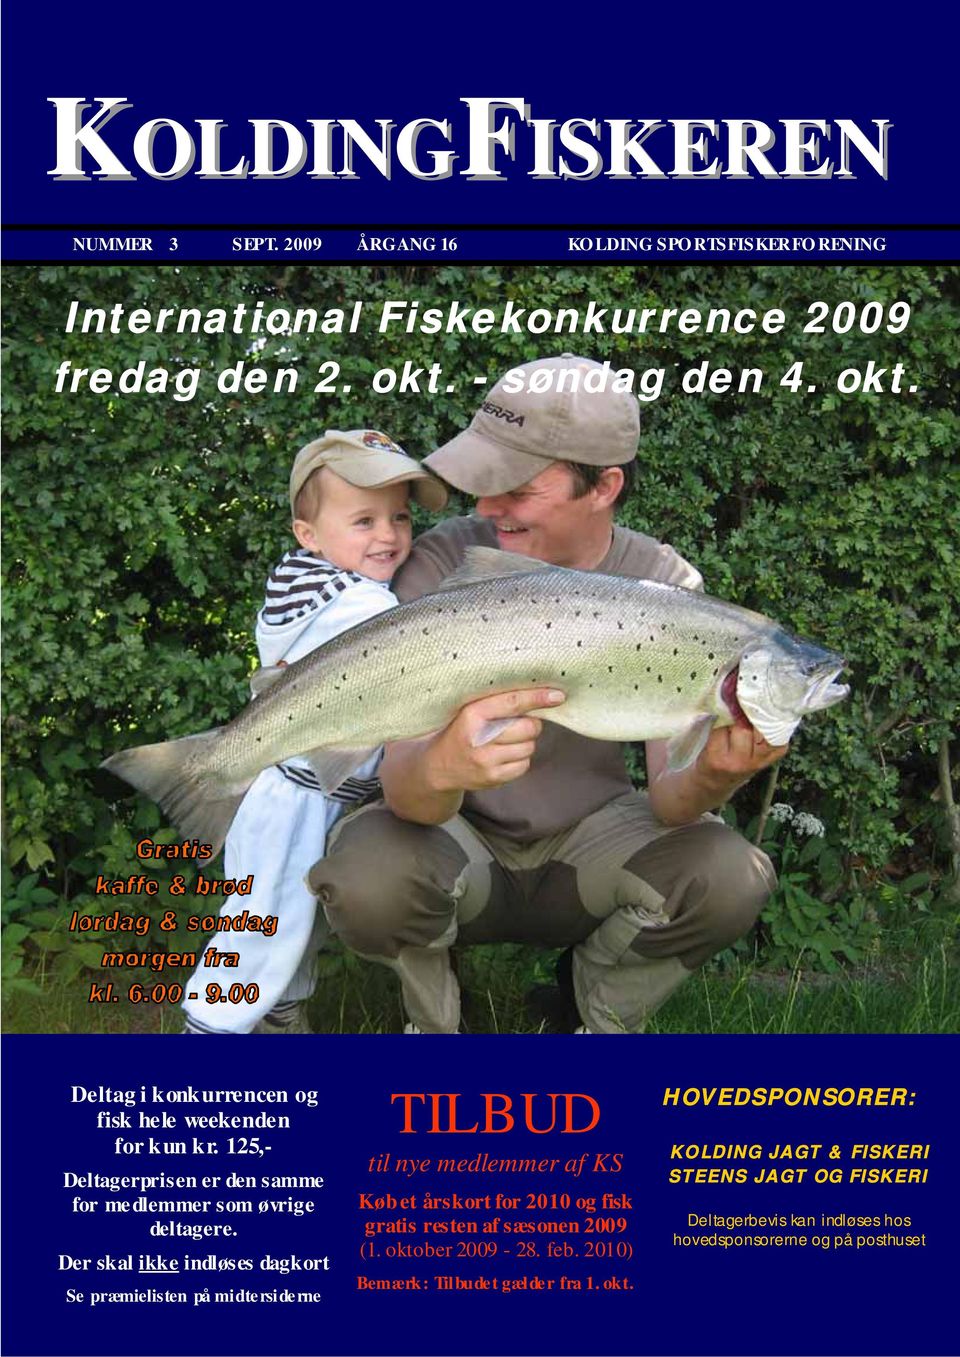 Der skal ikke indløses dagkort Se præmielisten på midtersiderne TILBUD til nye medlemmer af KS Køb et årskort for 2010 og fisk gratis resten af sæsonen 2009